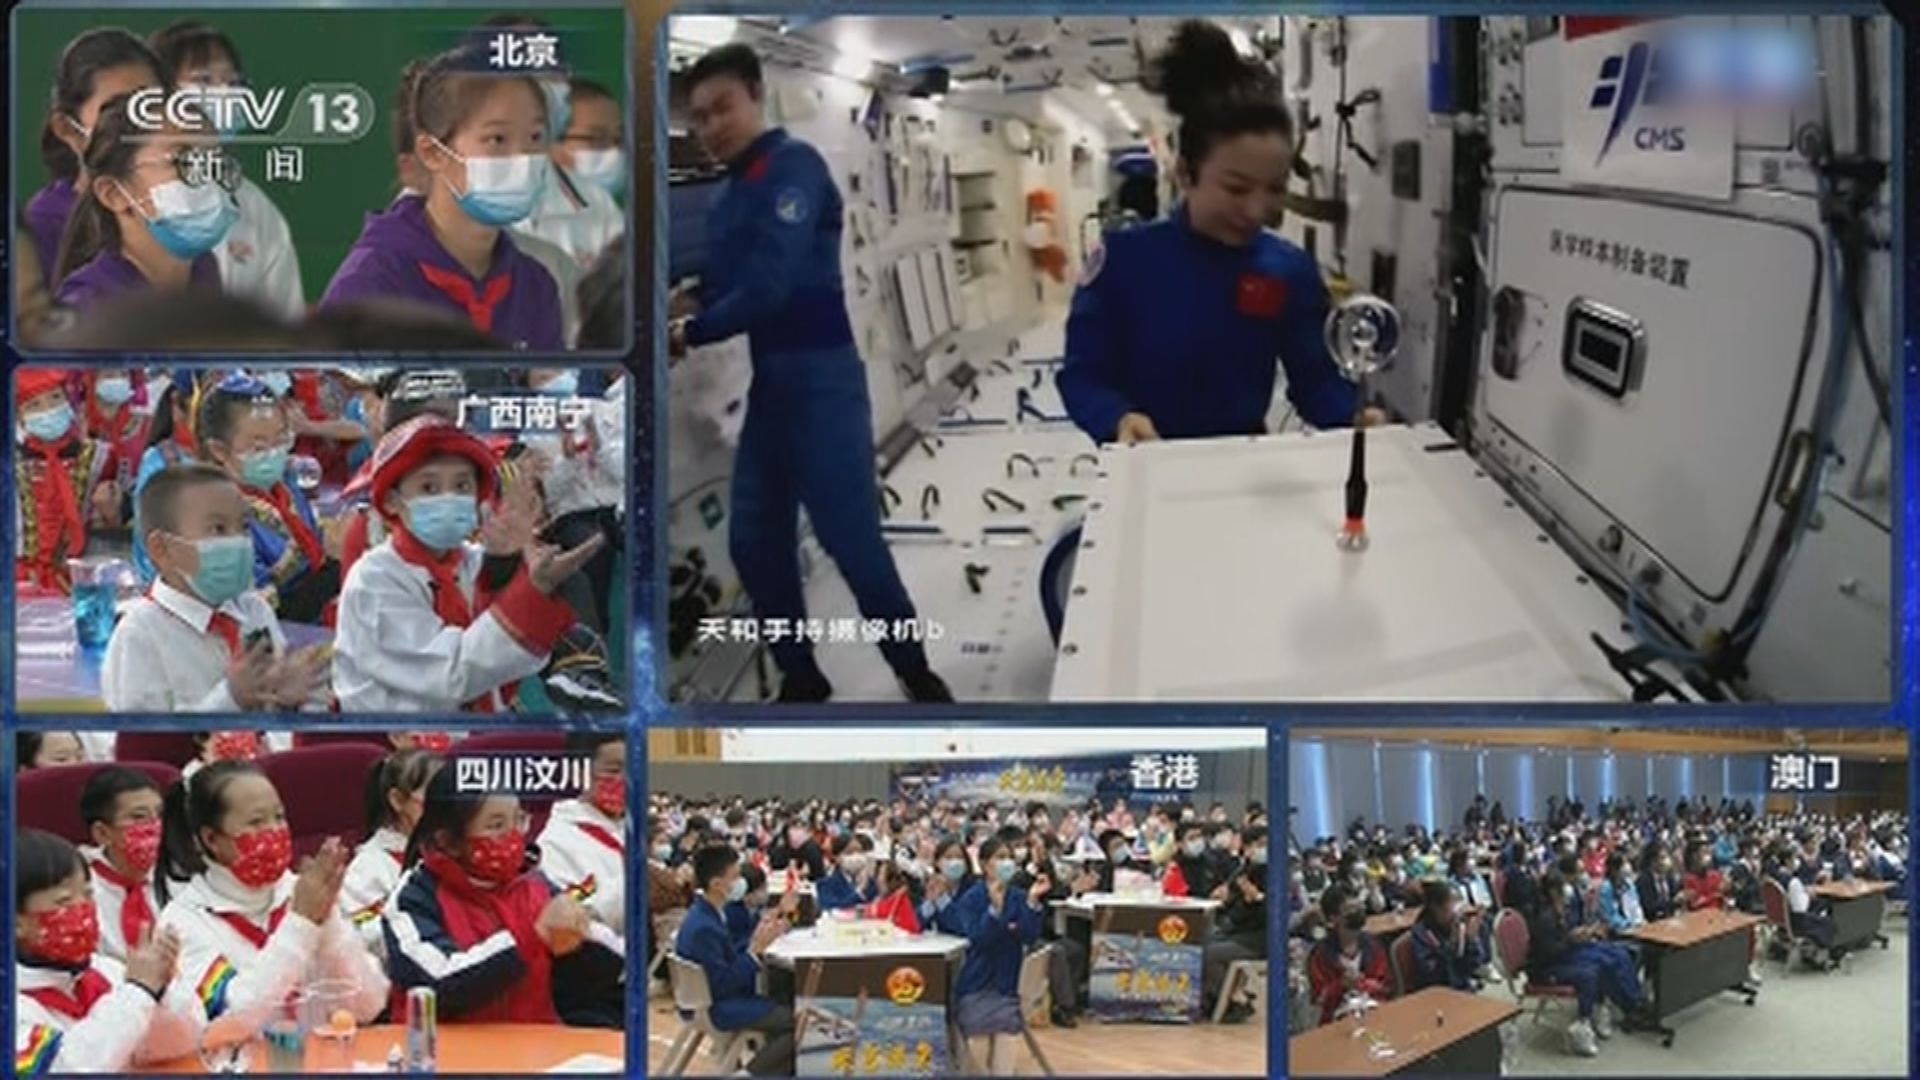 神舟十三號太空人舉行天宮課堂　跟地面學生「天地互動」